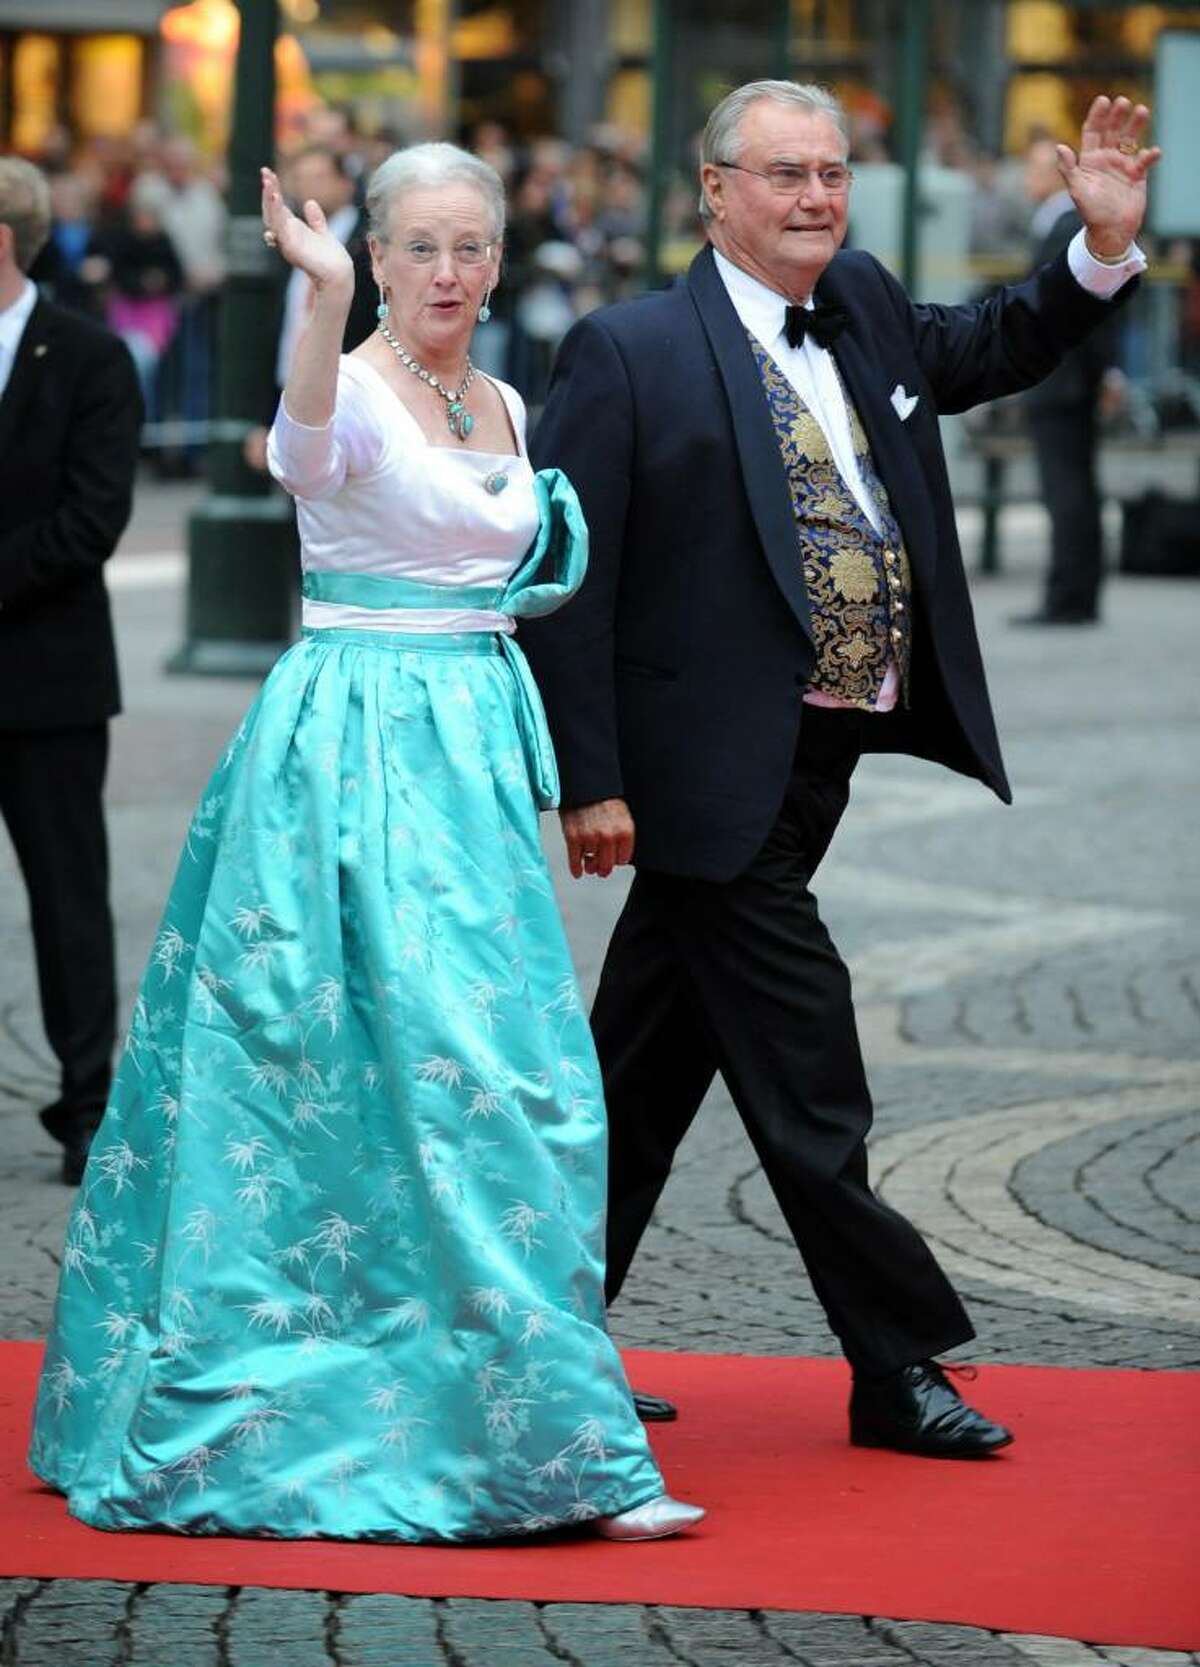 Sweden's Princess Victoria Marries Daniel Westling